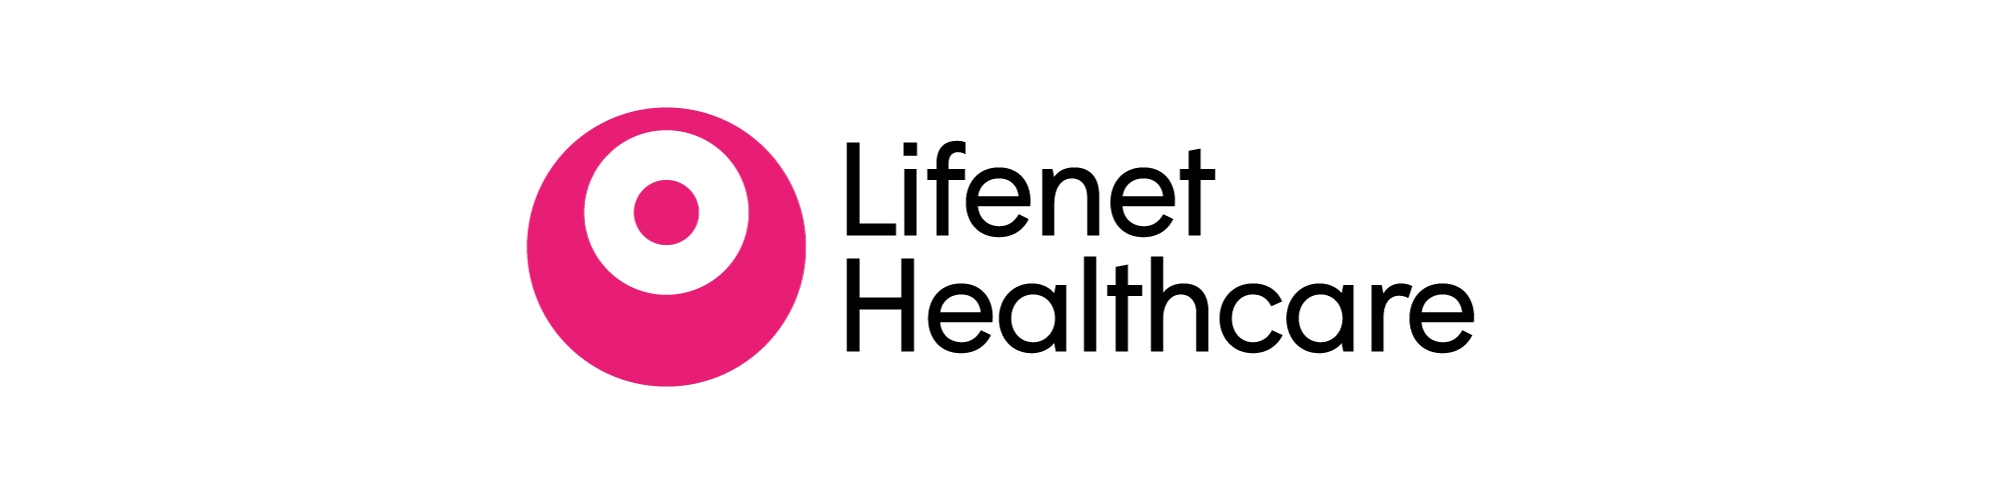 Lifenet Healthcare